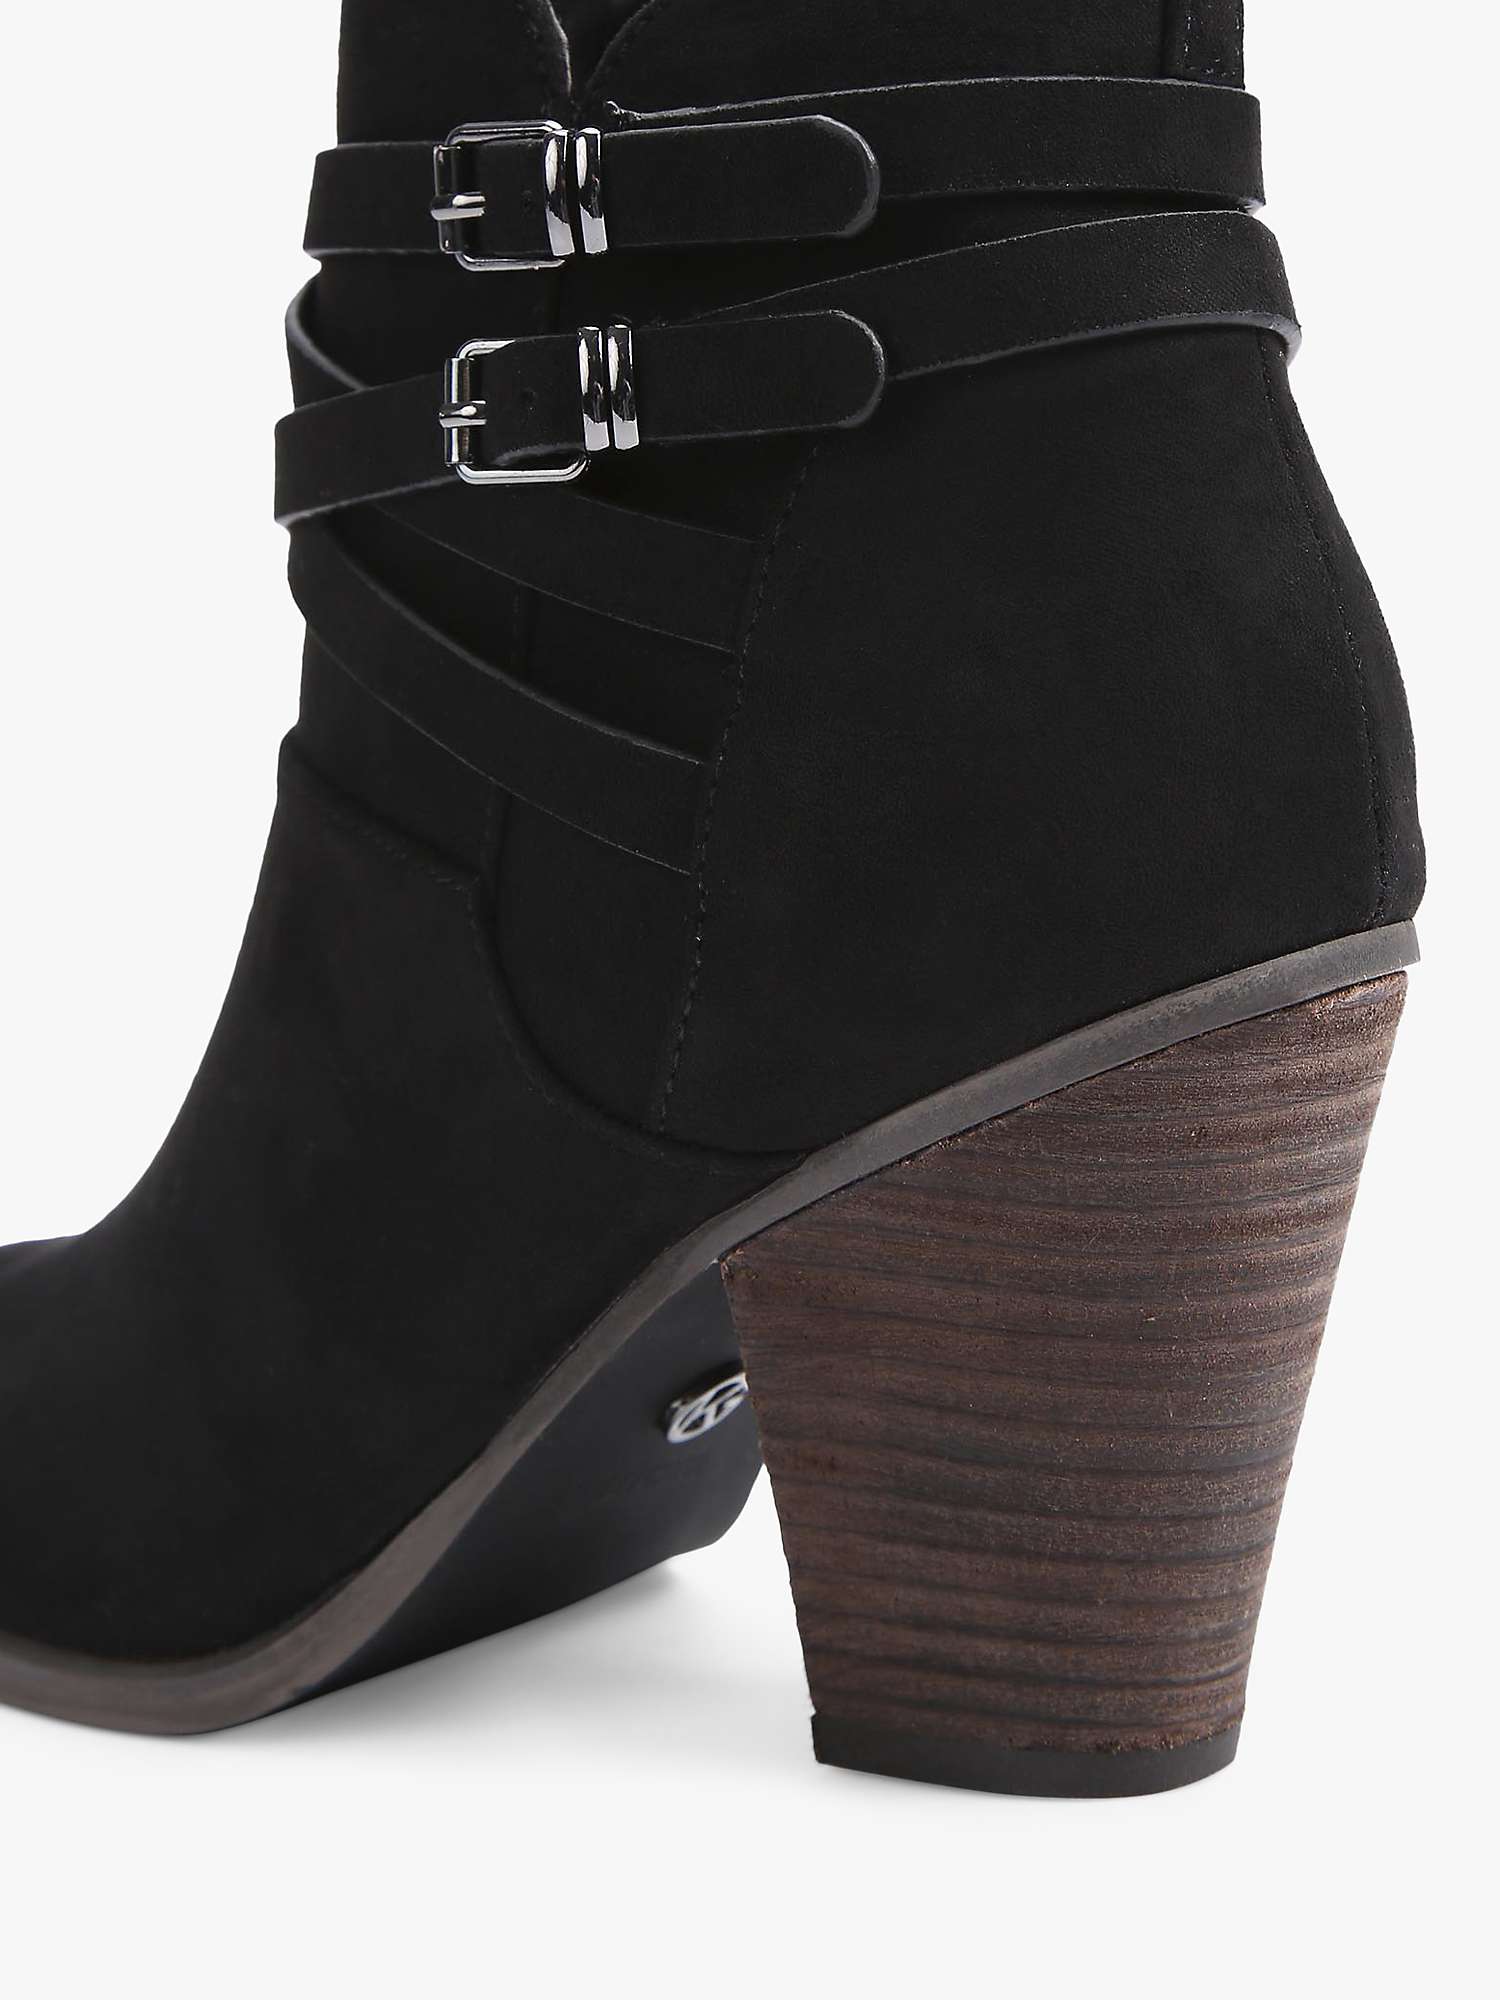 Buy KG Kurt Geiger Spike3 Microsuede Block Heel Ankle Boots, Black Online at johnlewis.com